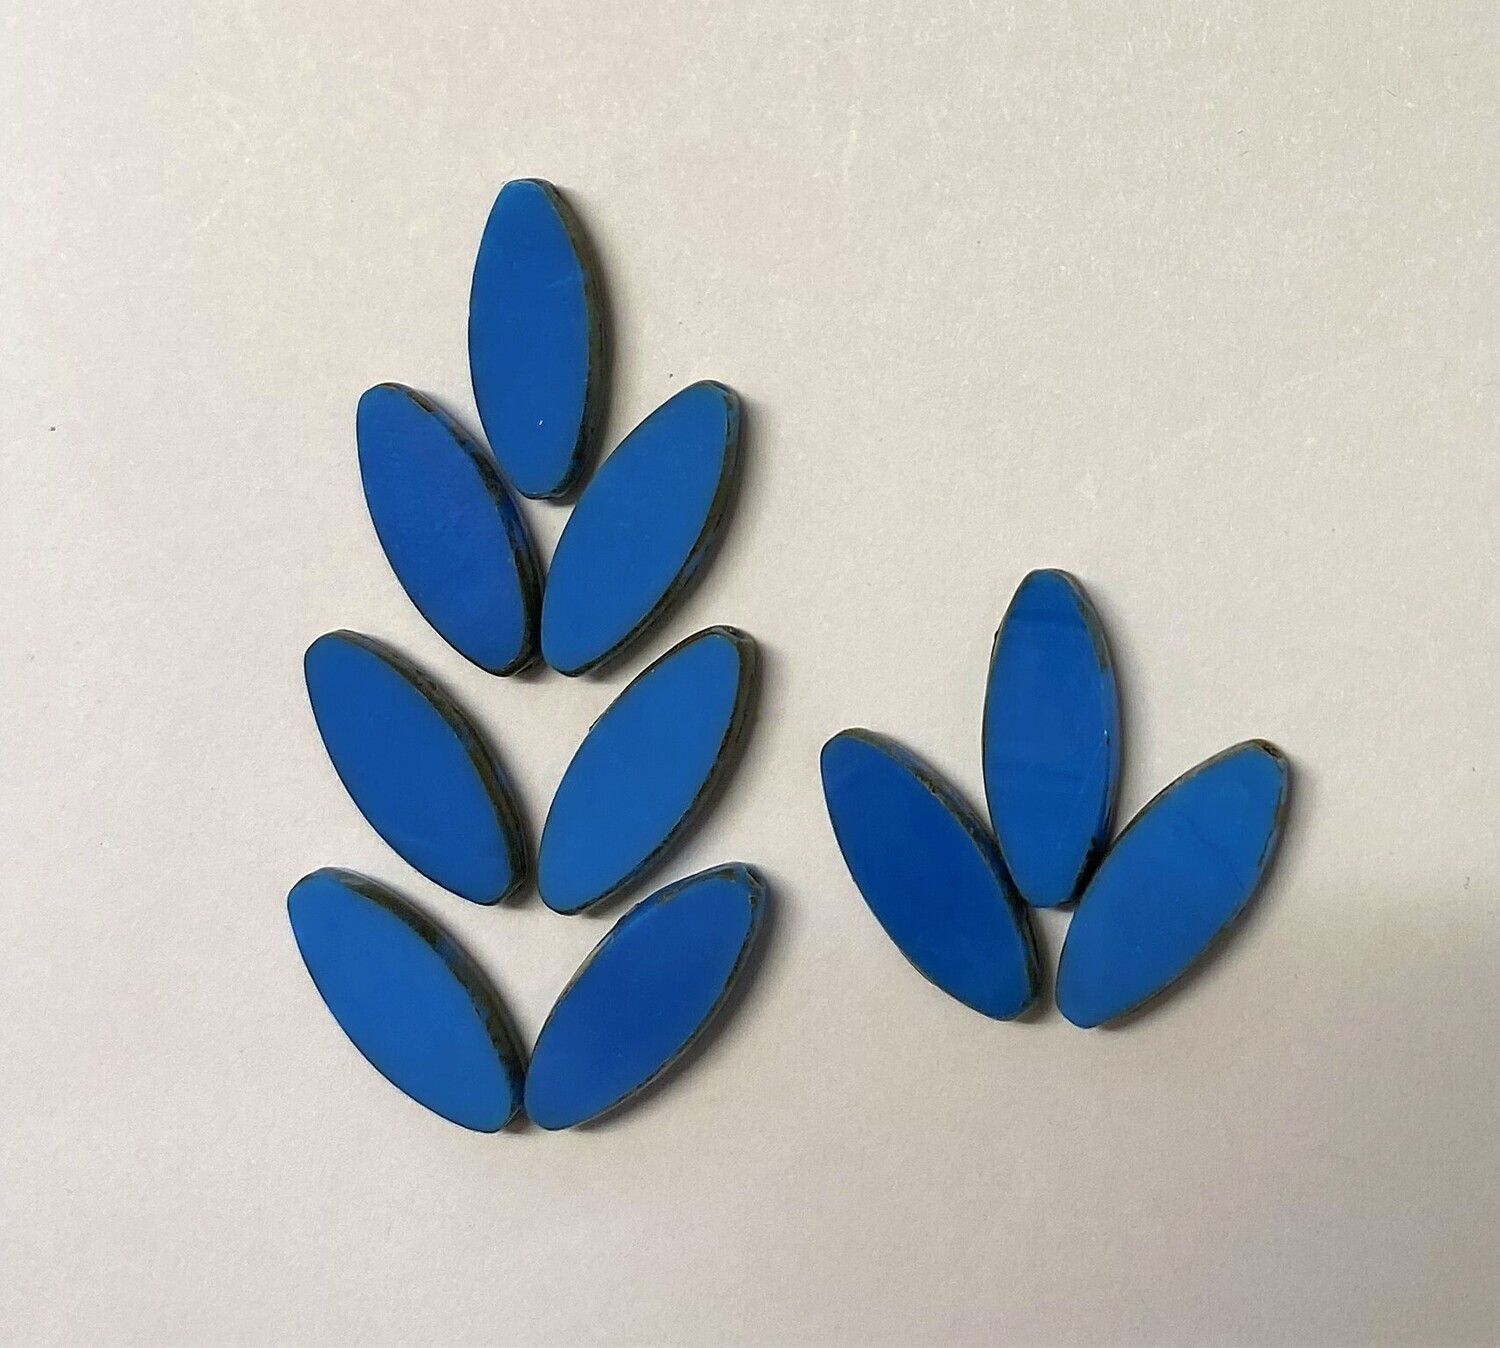 10 Azure Blue Czech Glass Petals